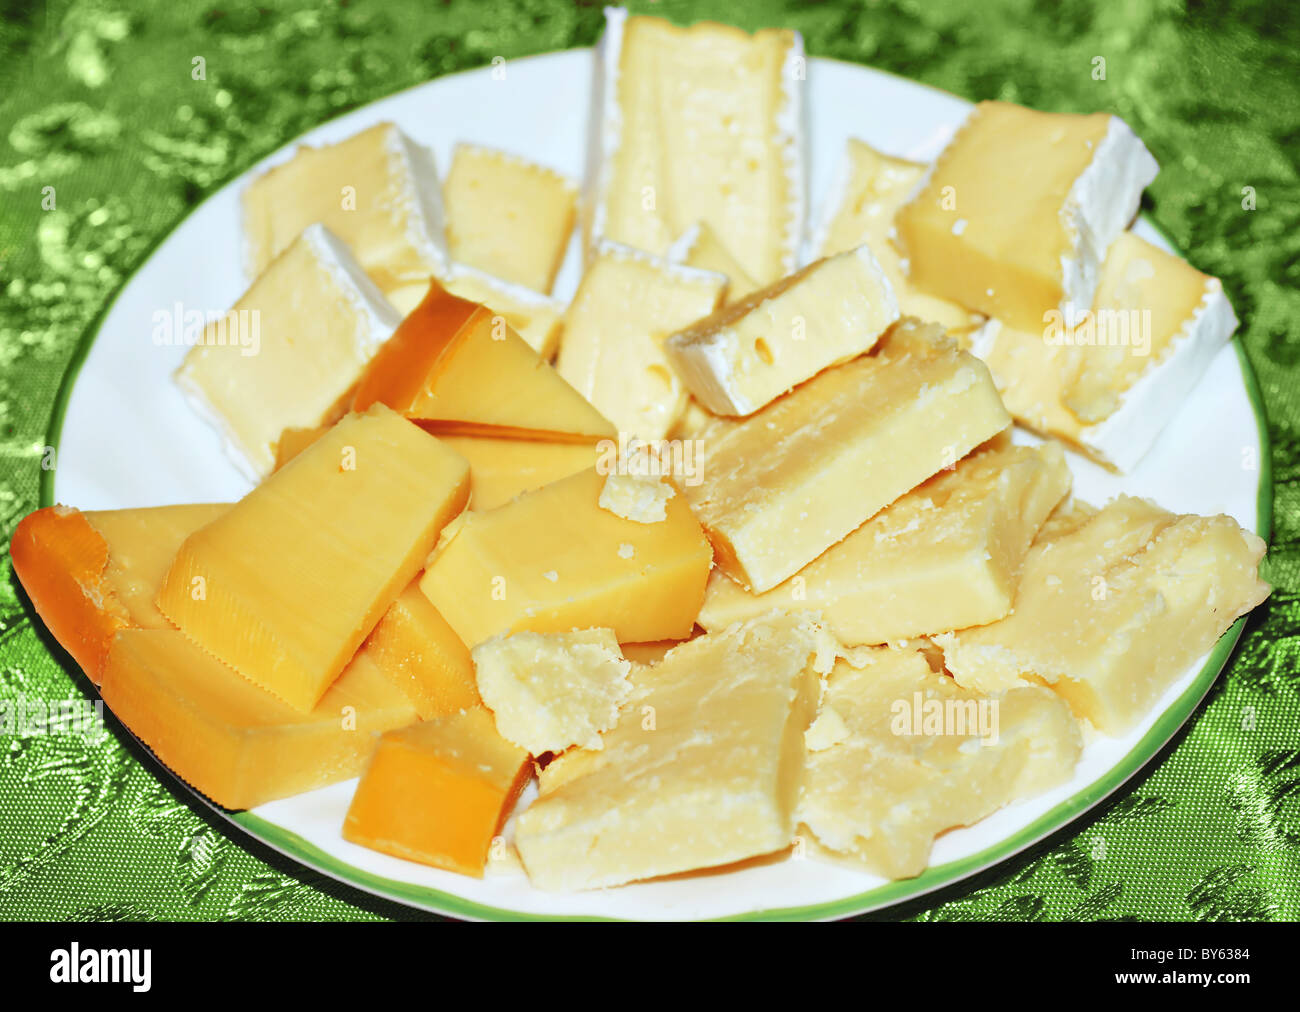 Tabla de quesos, gouda, cheddar viejo y brie sirve sobre una placa blanca sobre el mantel verde. Foto de stock